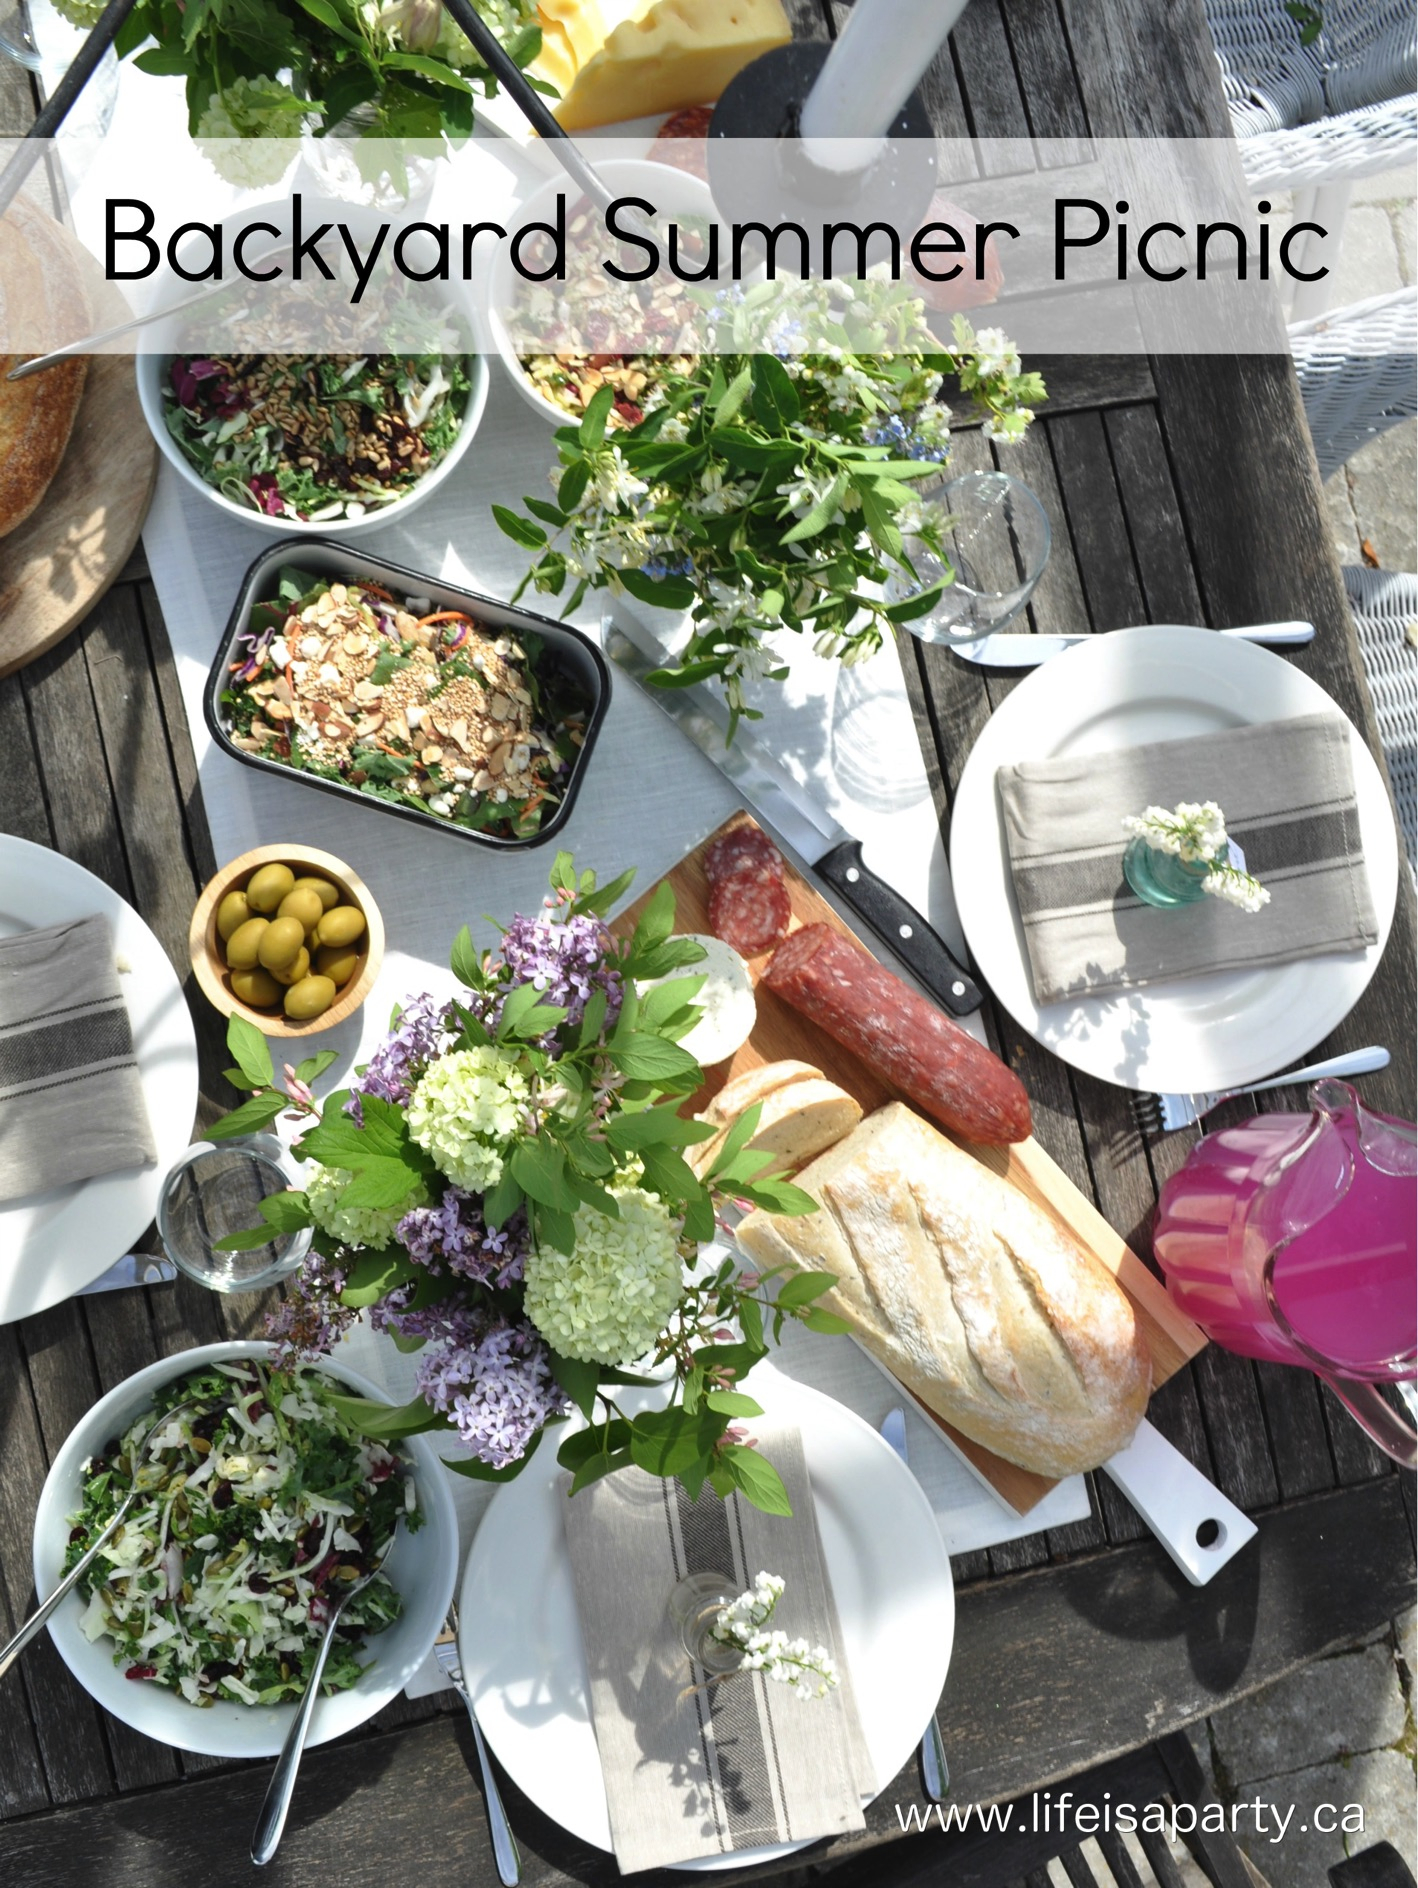 23.SIMPHOME.COM A summer backyard picnic